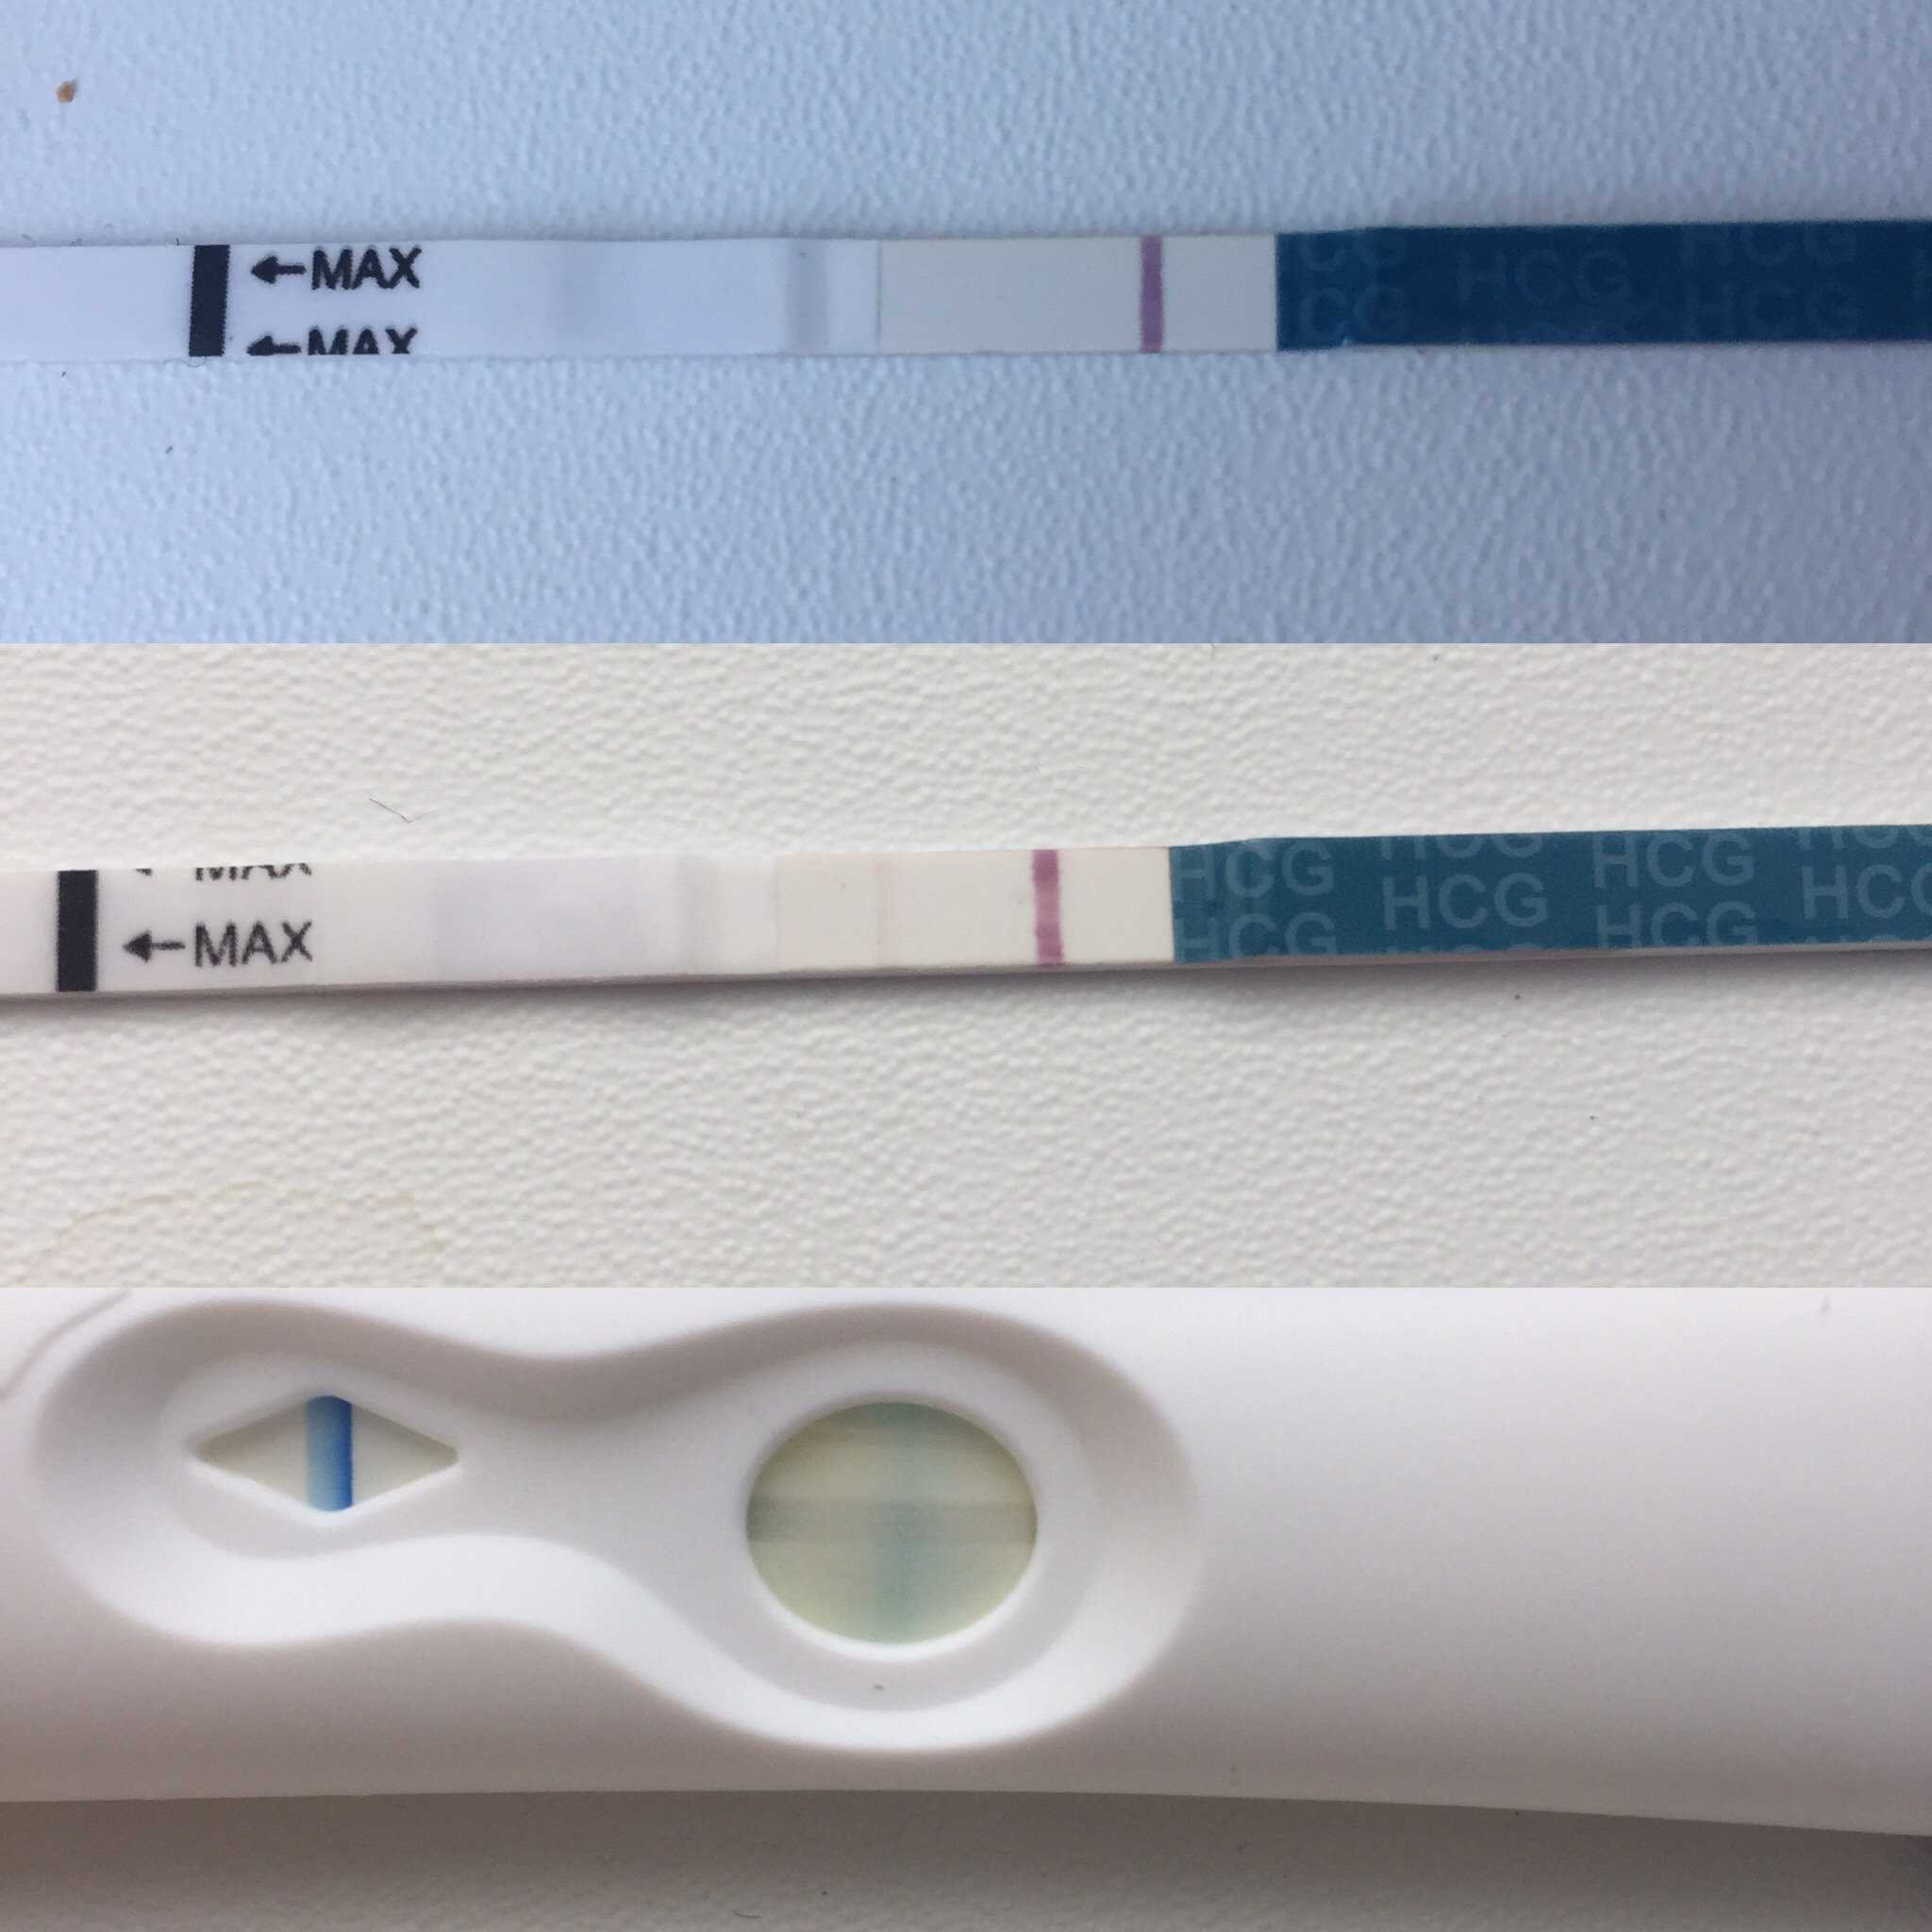 Почему тест полоска бледная на беременность. Тест на беременность эвитест слабая вторая полоска. Эвитест 2 полоска бледнее. Контрольная полоска бледнее тестовой Evitest. Беременность вторая полоска бледная.